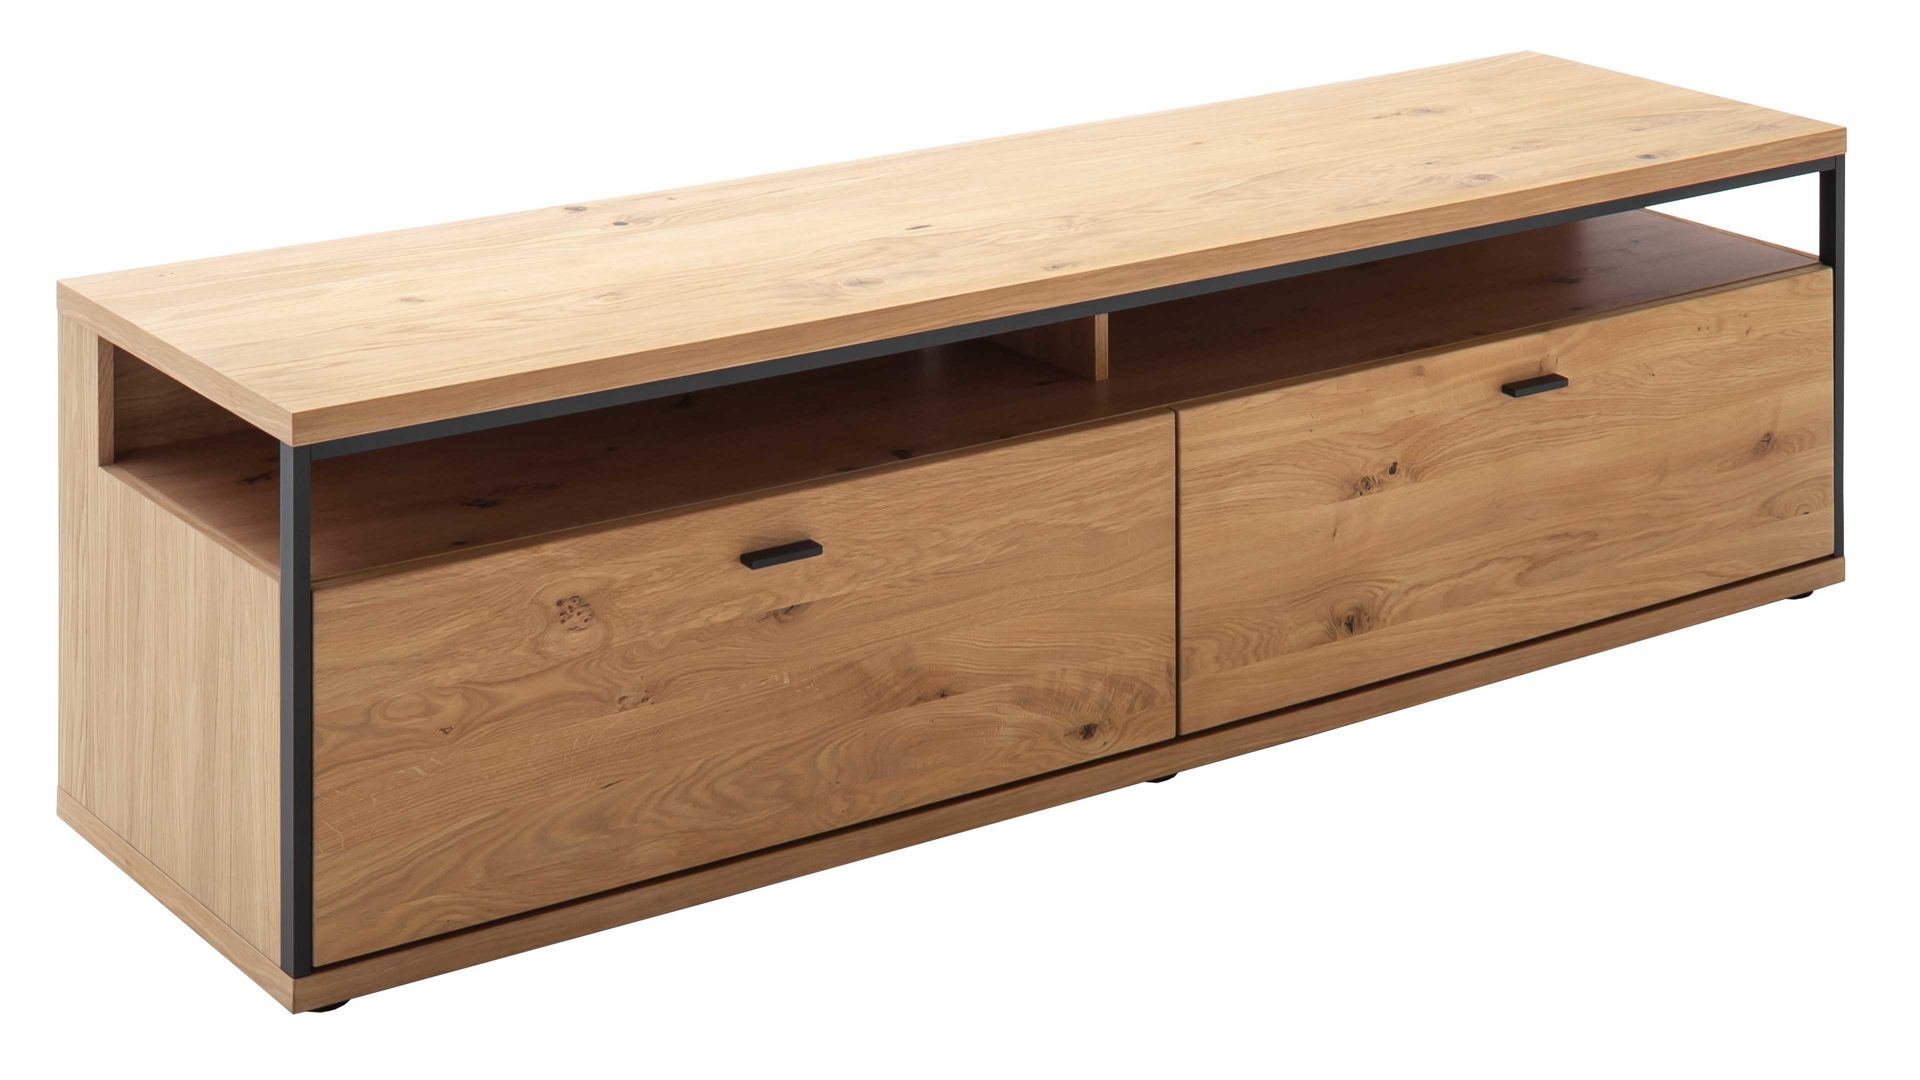 Lowboard Mca furniture aus Holz in Holzfarben Wohnprogramm Bari - Lowboard Asteiche Bianco – zwei Schubladen, Länge ca. 183 cm